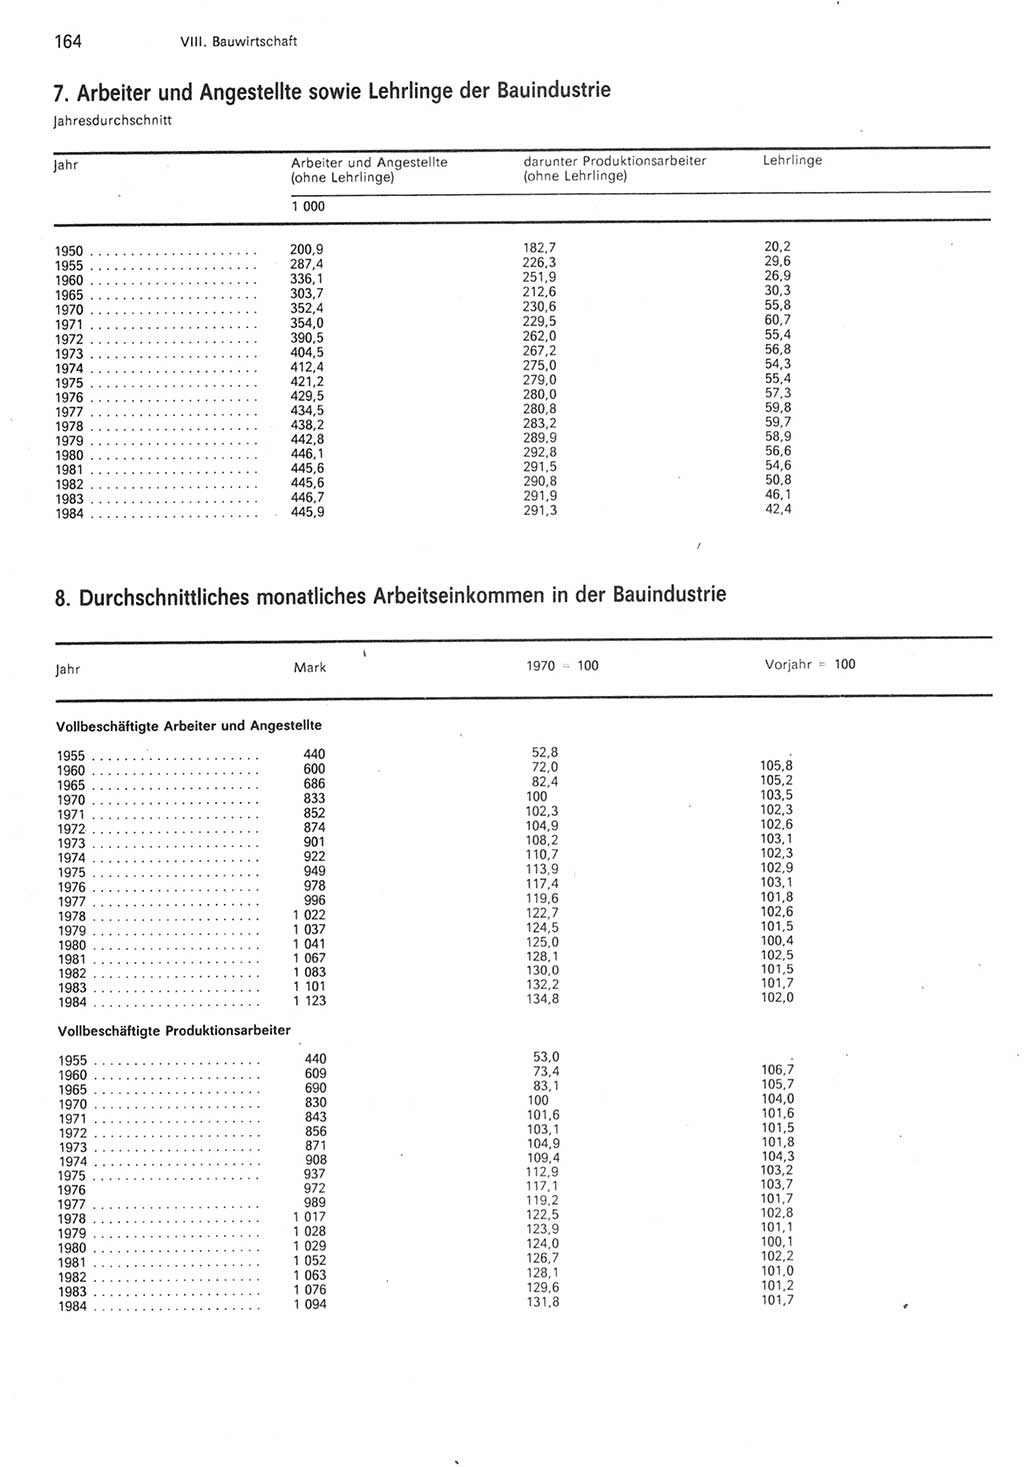 Statistisches Jahrbuch der Deutschen Demokratischen Republik (DDR) 1985, Seite 164 (Stat. Jb. DDR 1985, S. 164)